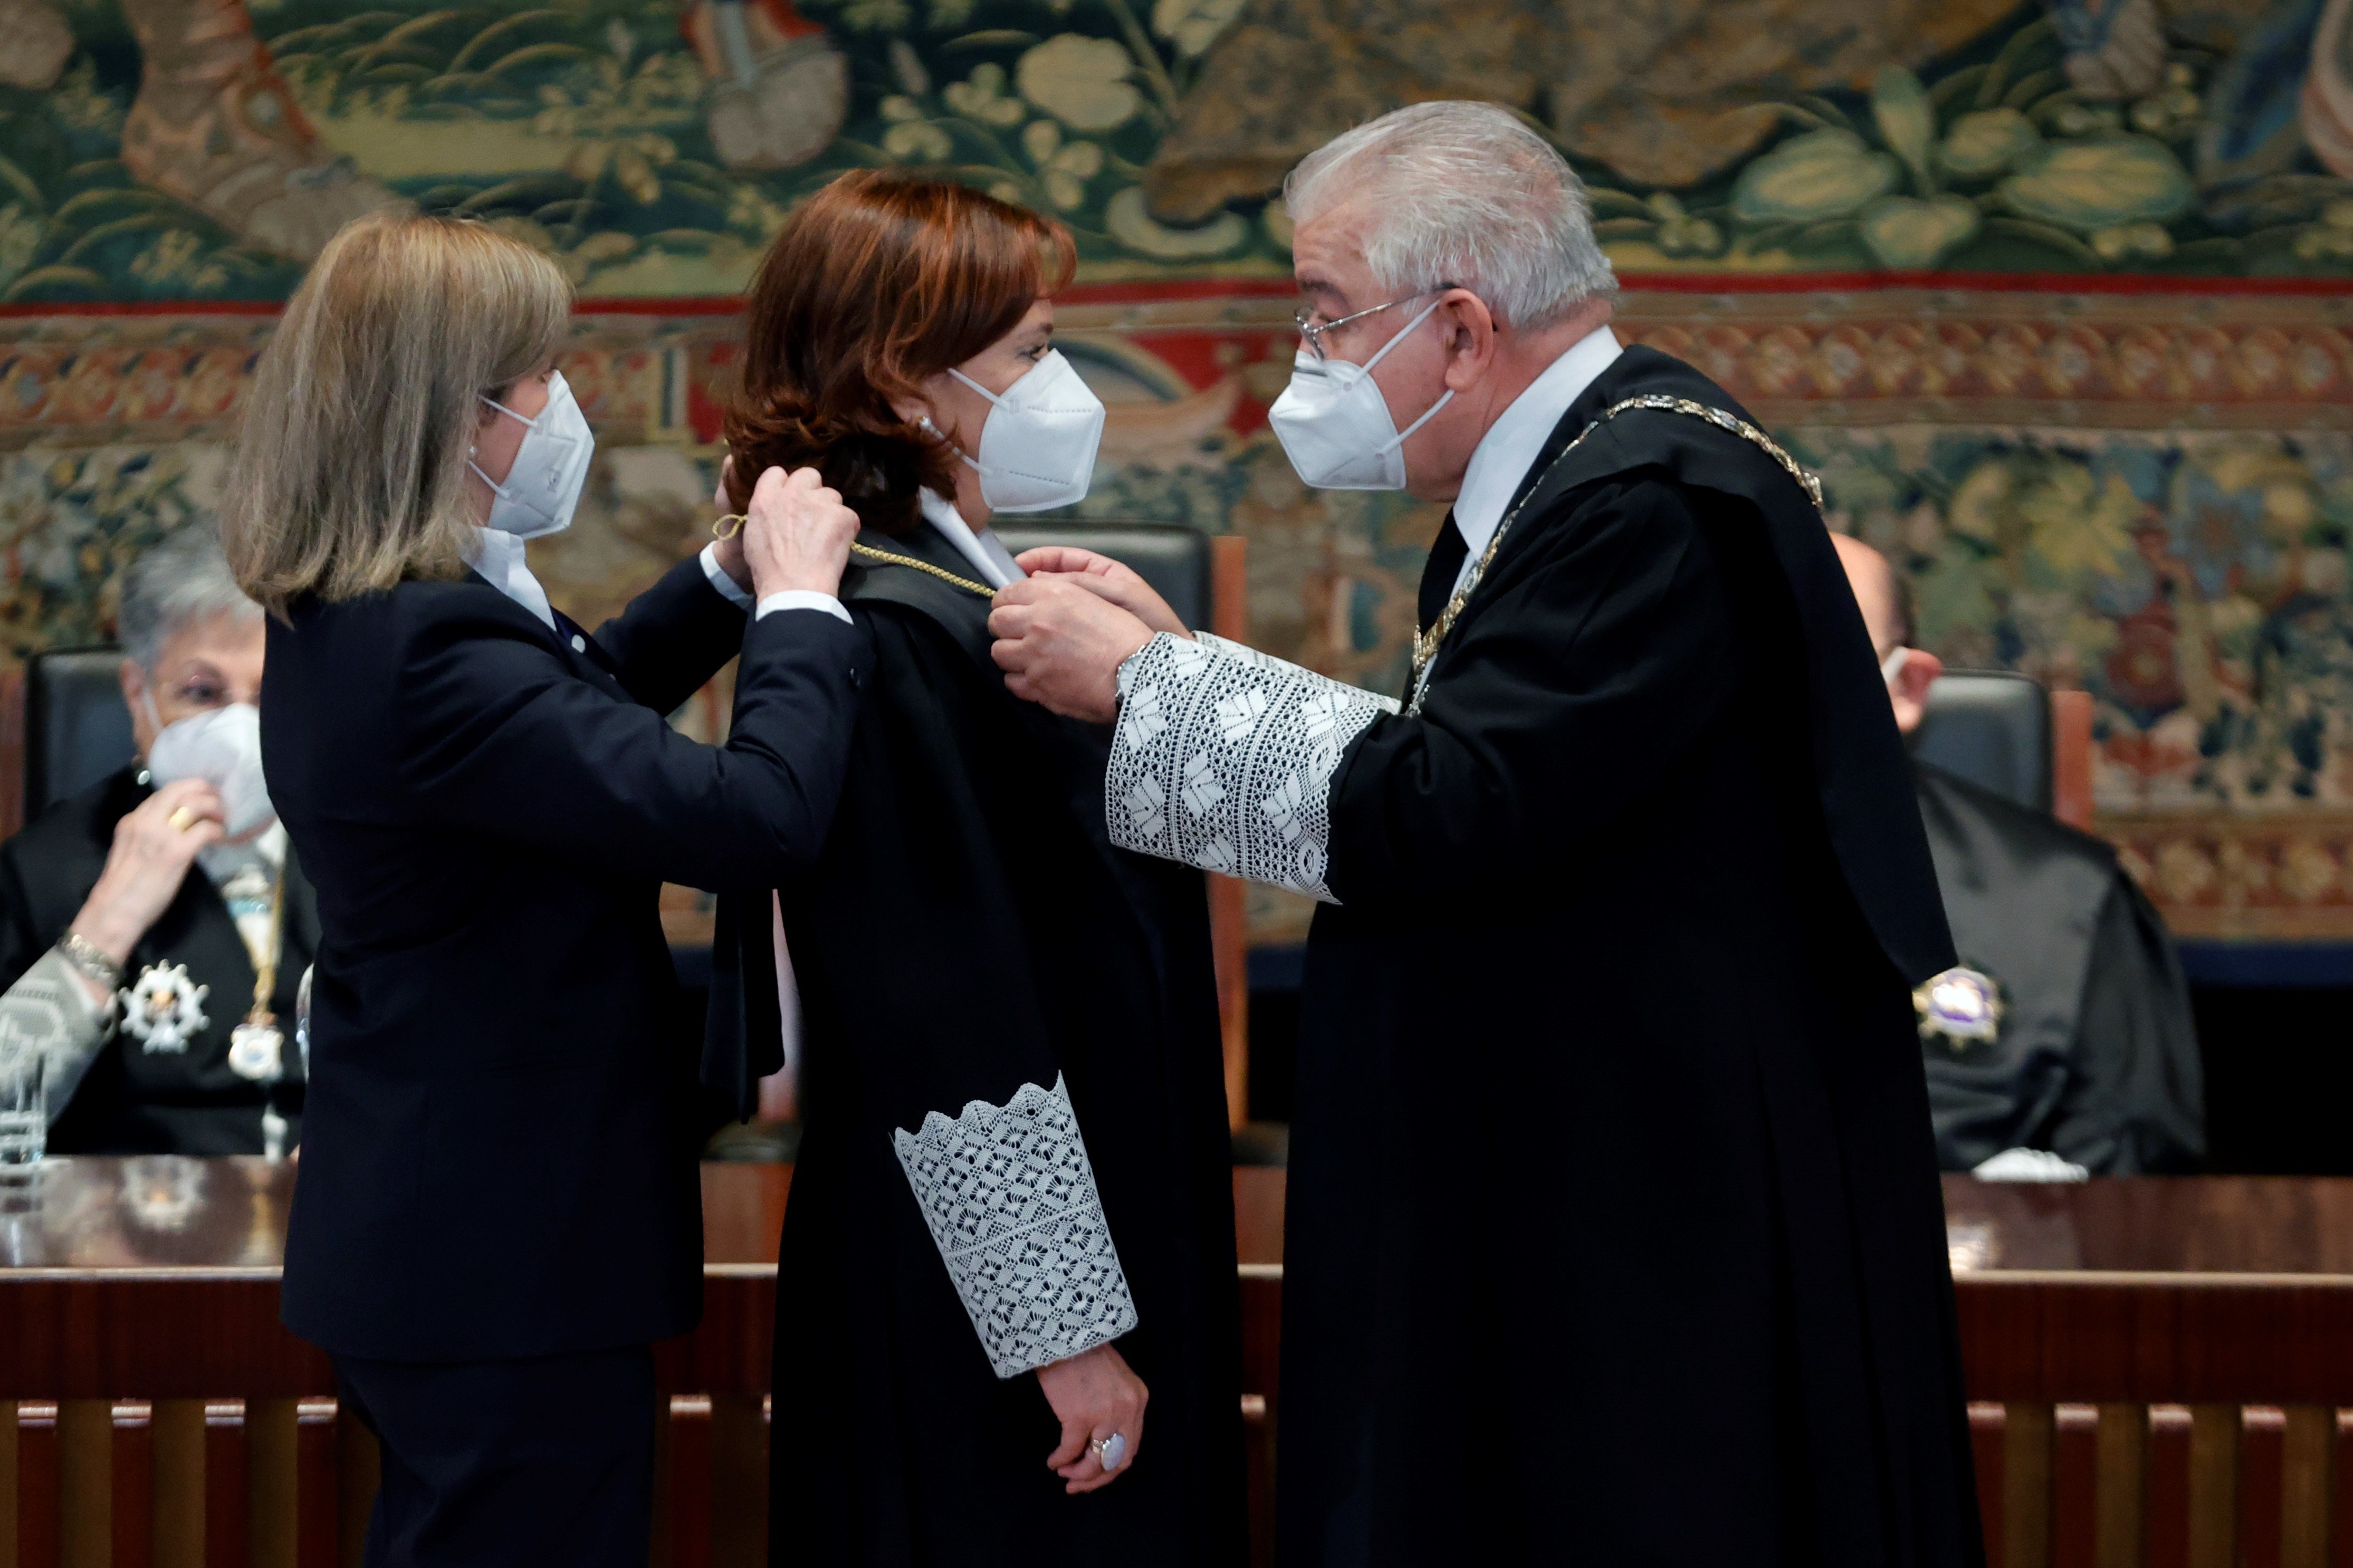 La magistrada Inmaculada Montalban toma posesión como nuevo juez tribunal constitucional, Madrid, nuevos miembros - Efe